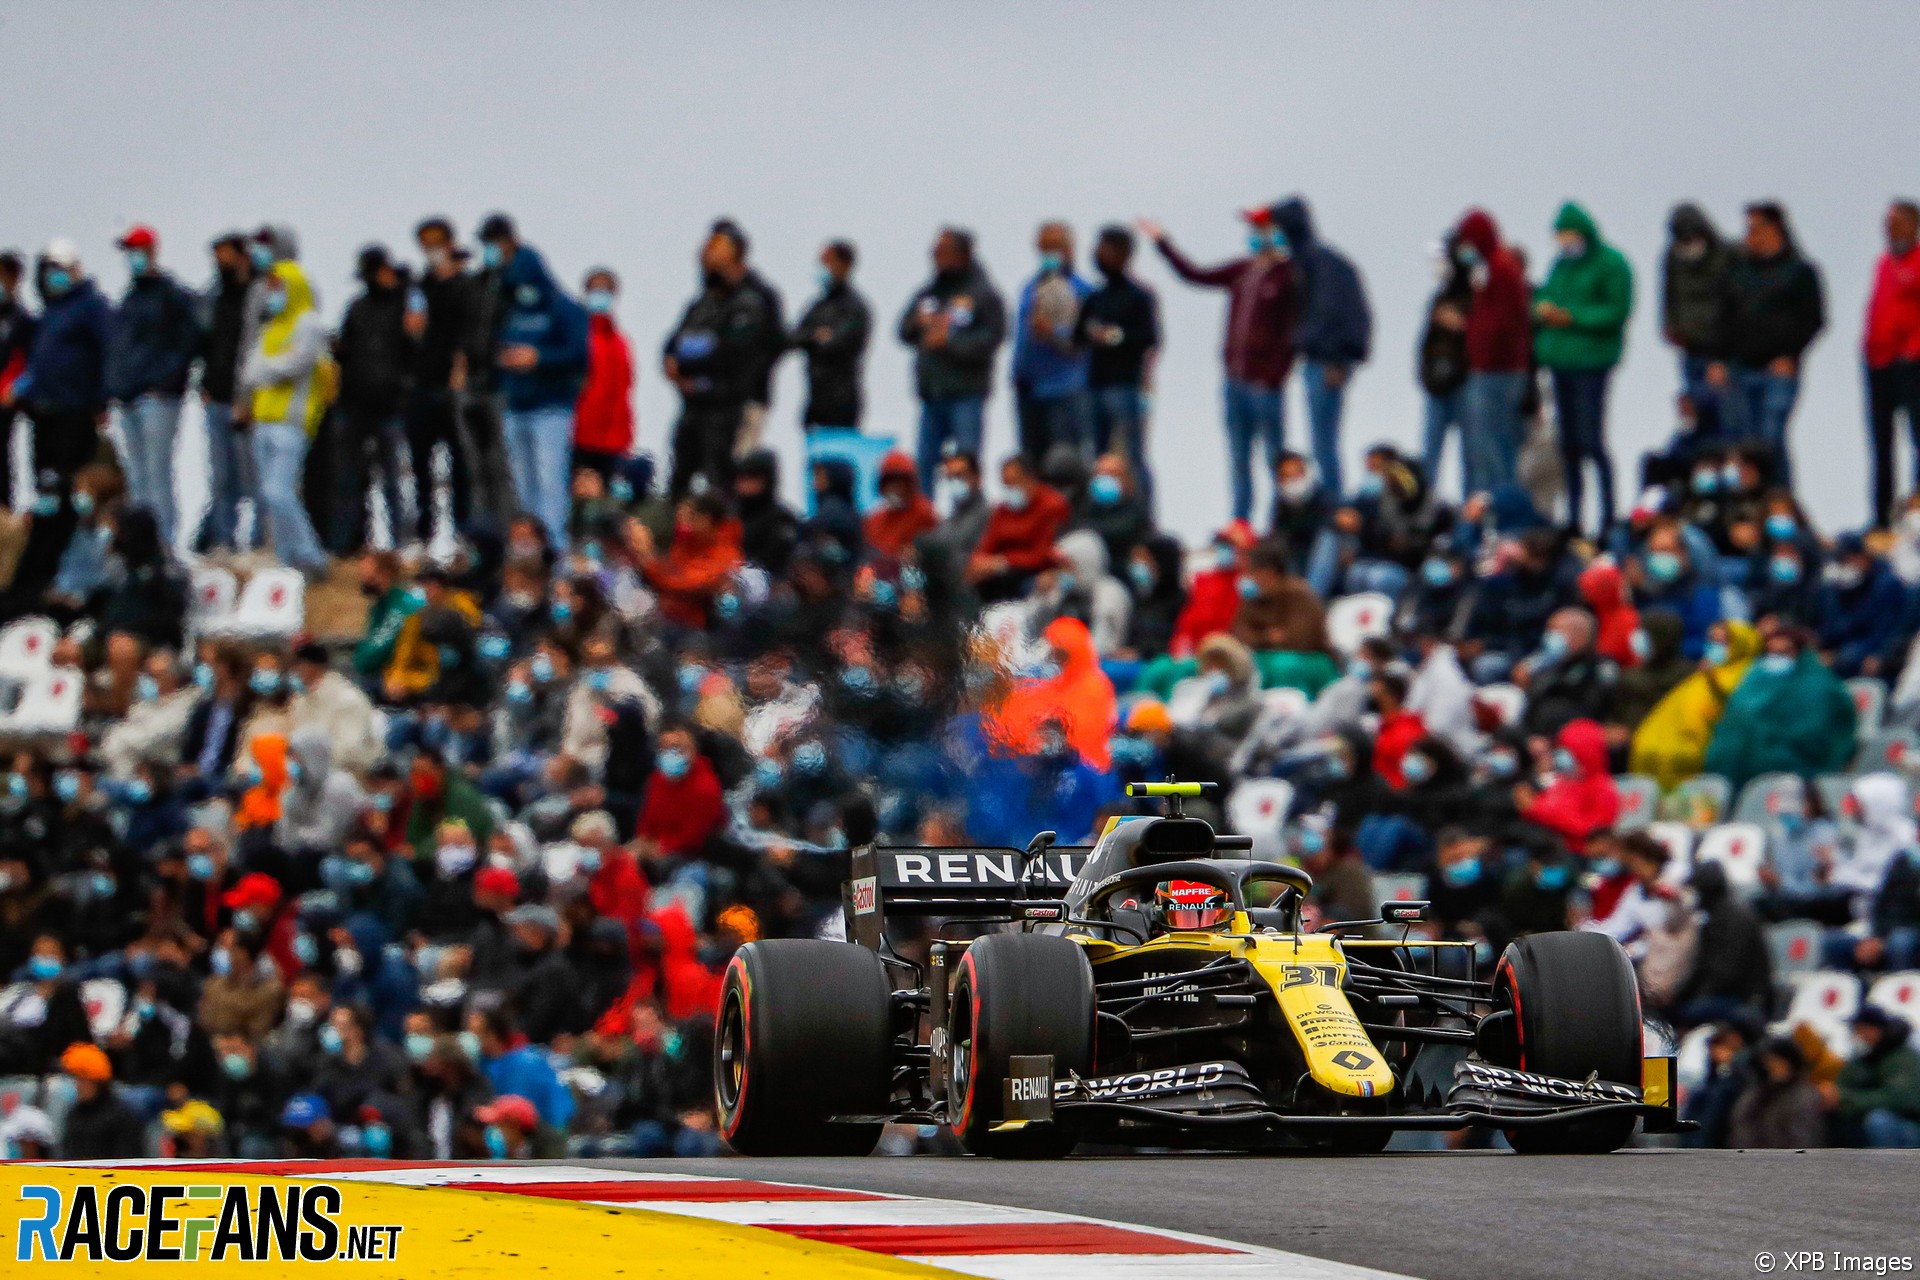 Esteban Ocon, Renault, Autodromo do Algarve, 2020